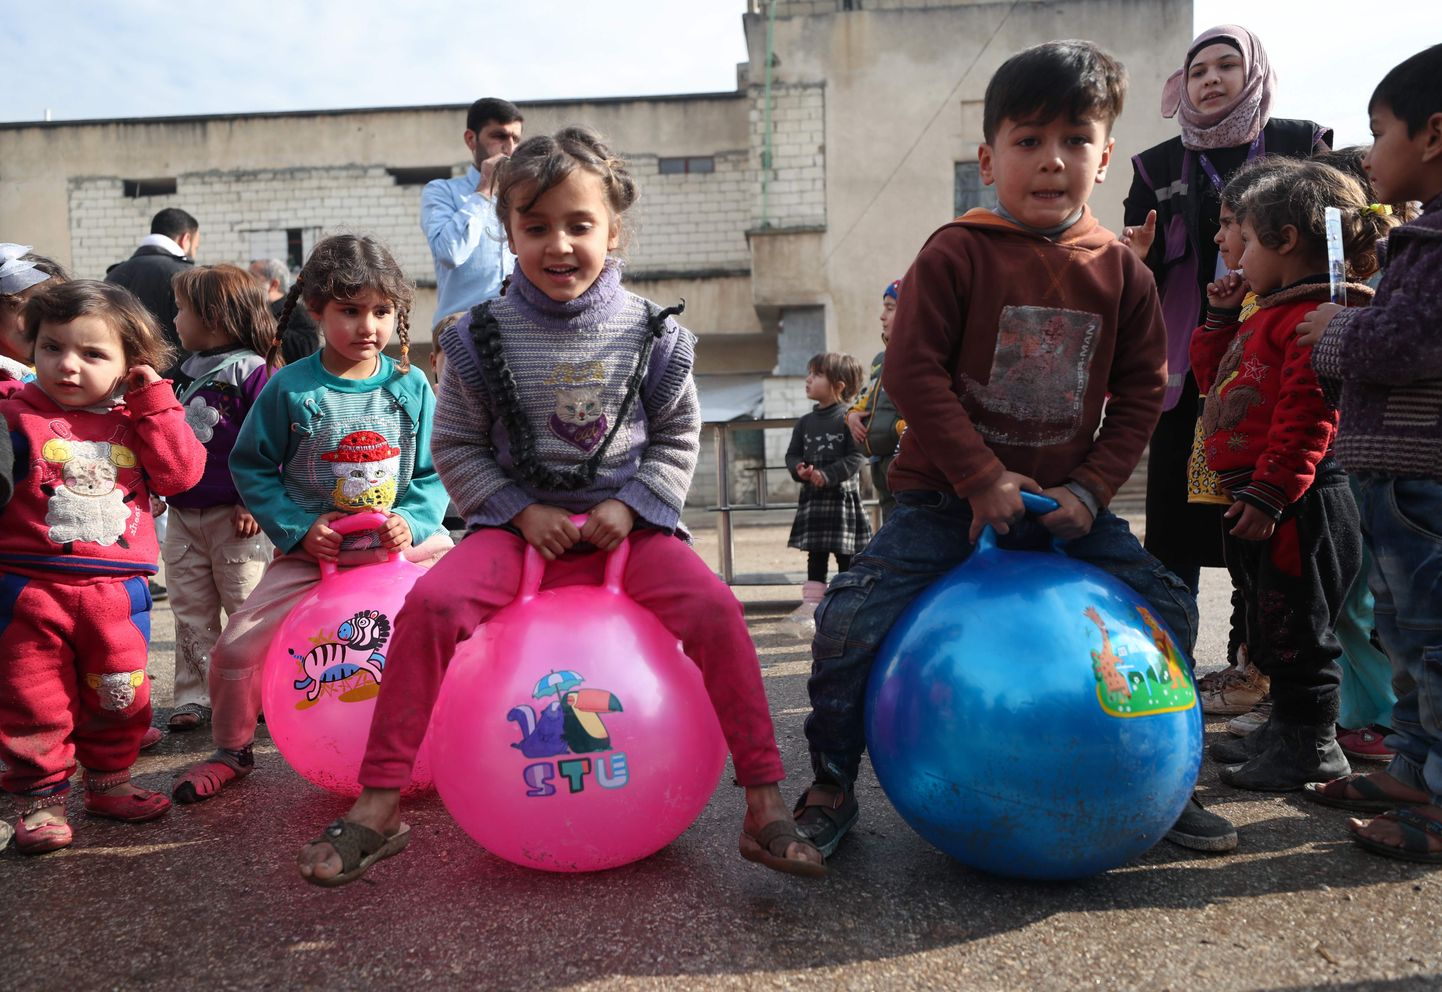 Ümberasustatud lapsed mängimas Süürias endise vangla aladel, mis on muudetud põgenike varjupaigaks. Türgi presidendi Recep Tayyip Erdoğani väitel liigub praegu rohkem kui 200 000 süürlast Türgi piiri poole.